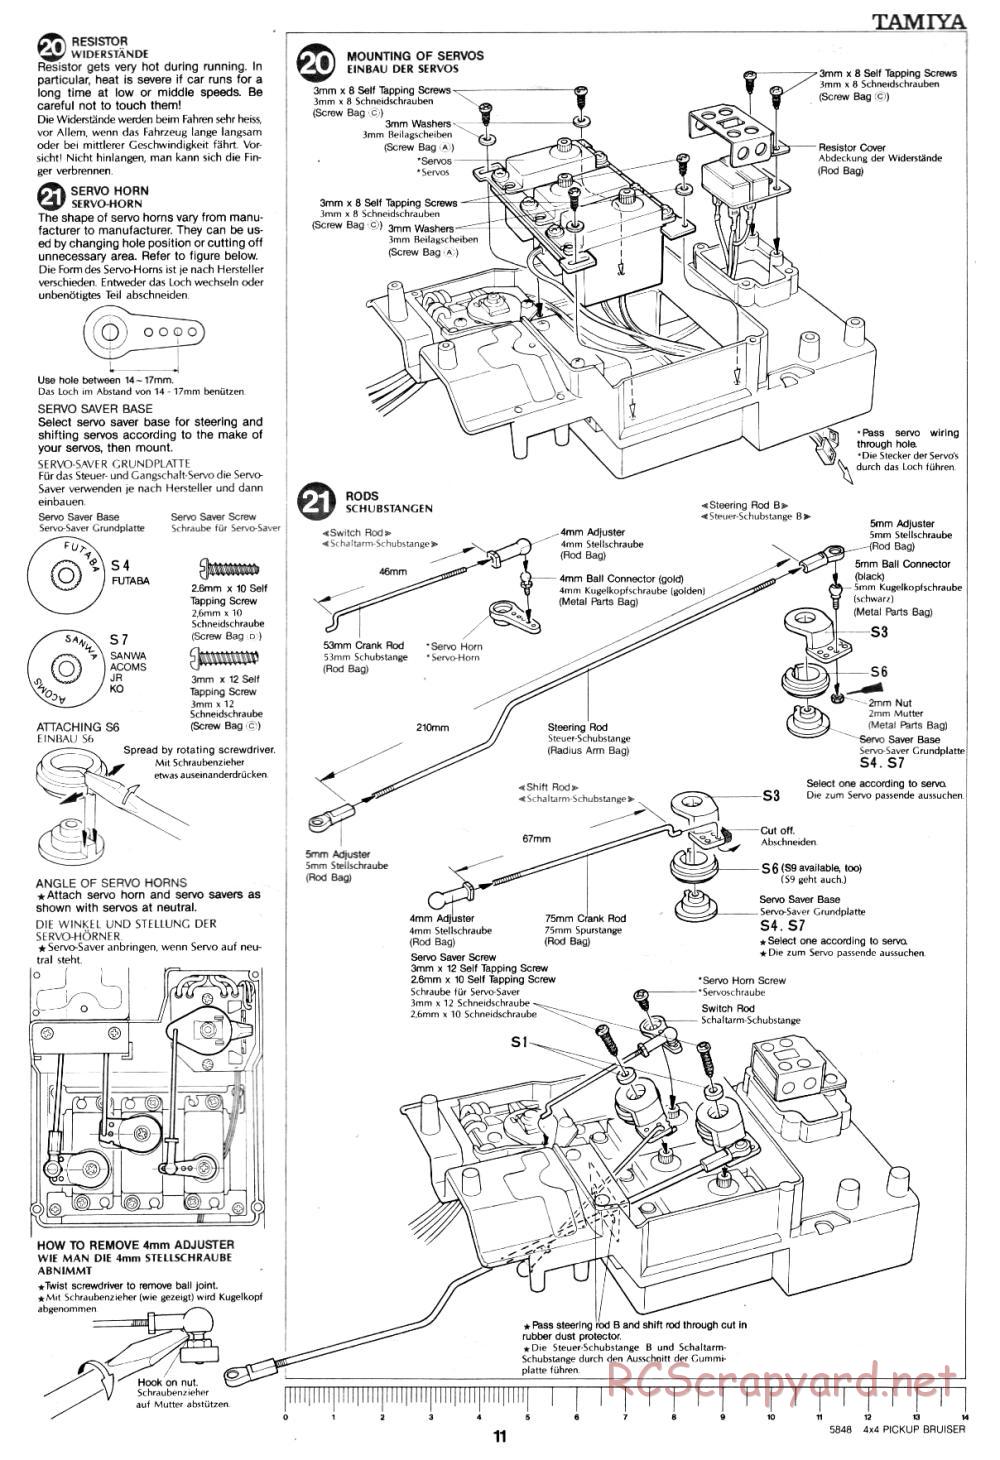 Tamiya - Toyota 4x4 Pick-Up Bruiser - 58048 - Manual - Page 11